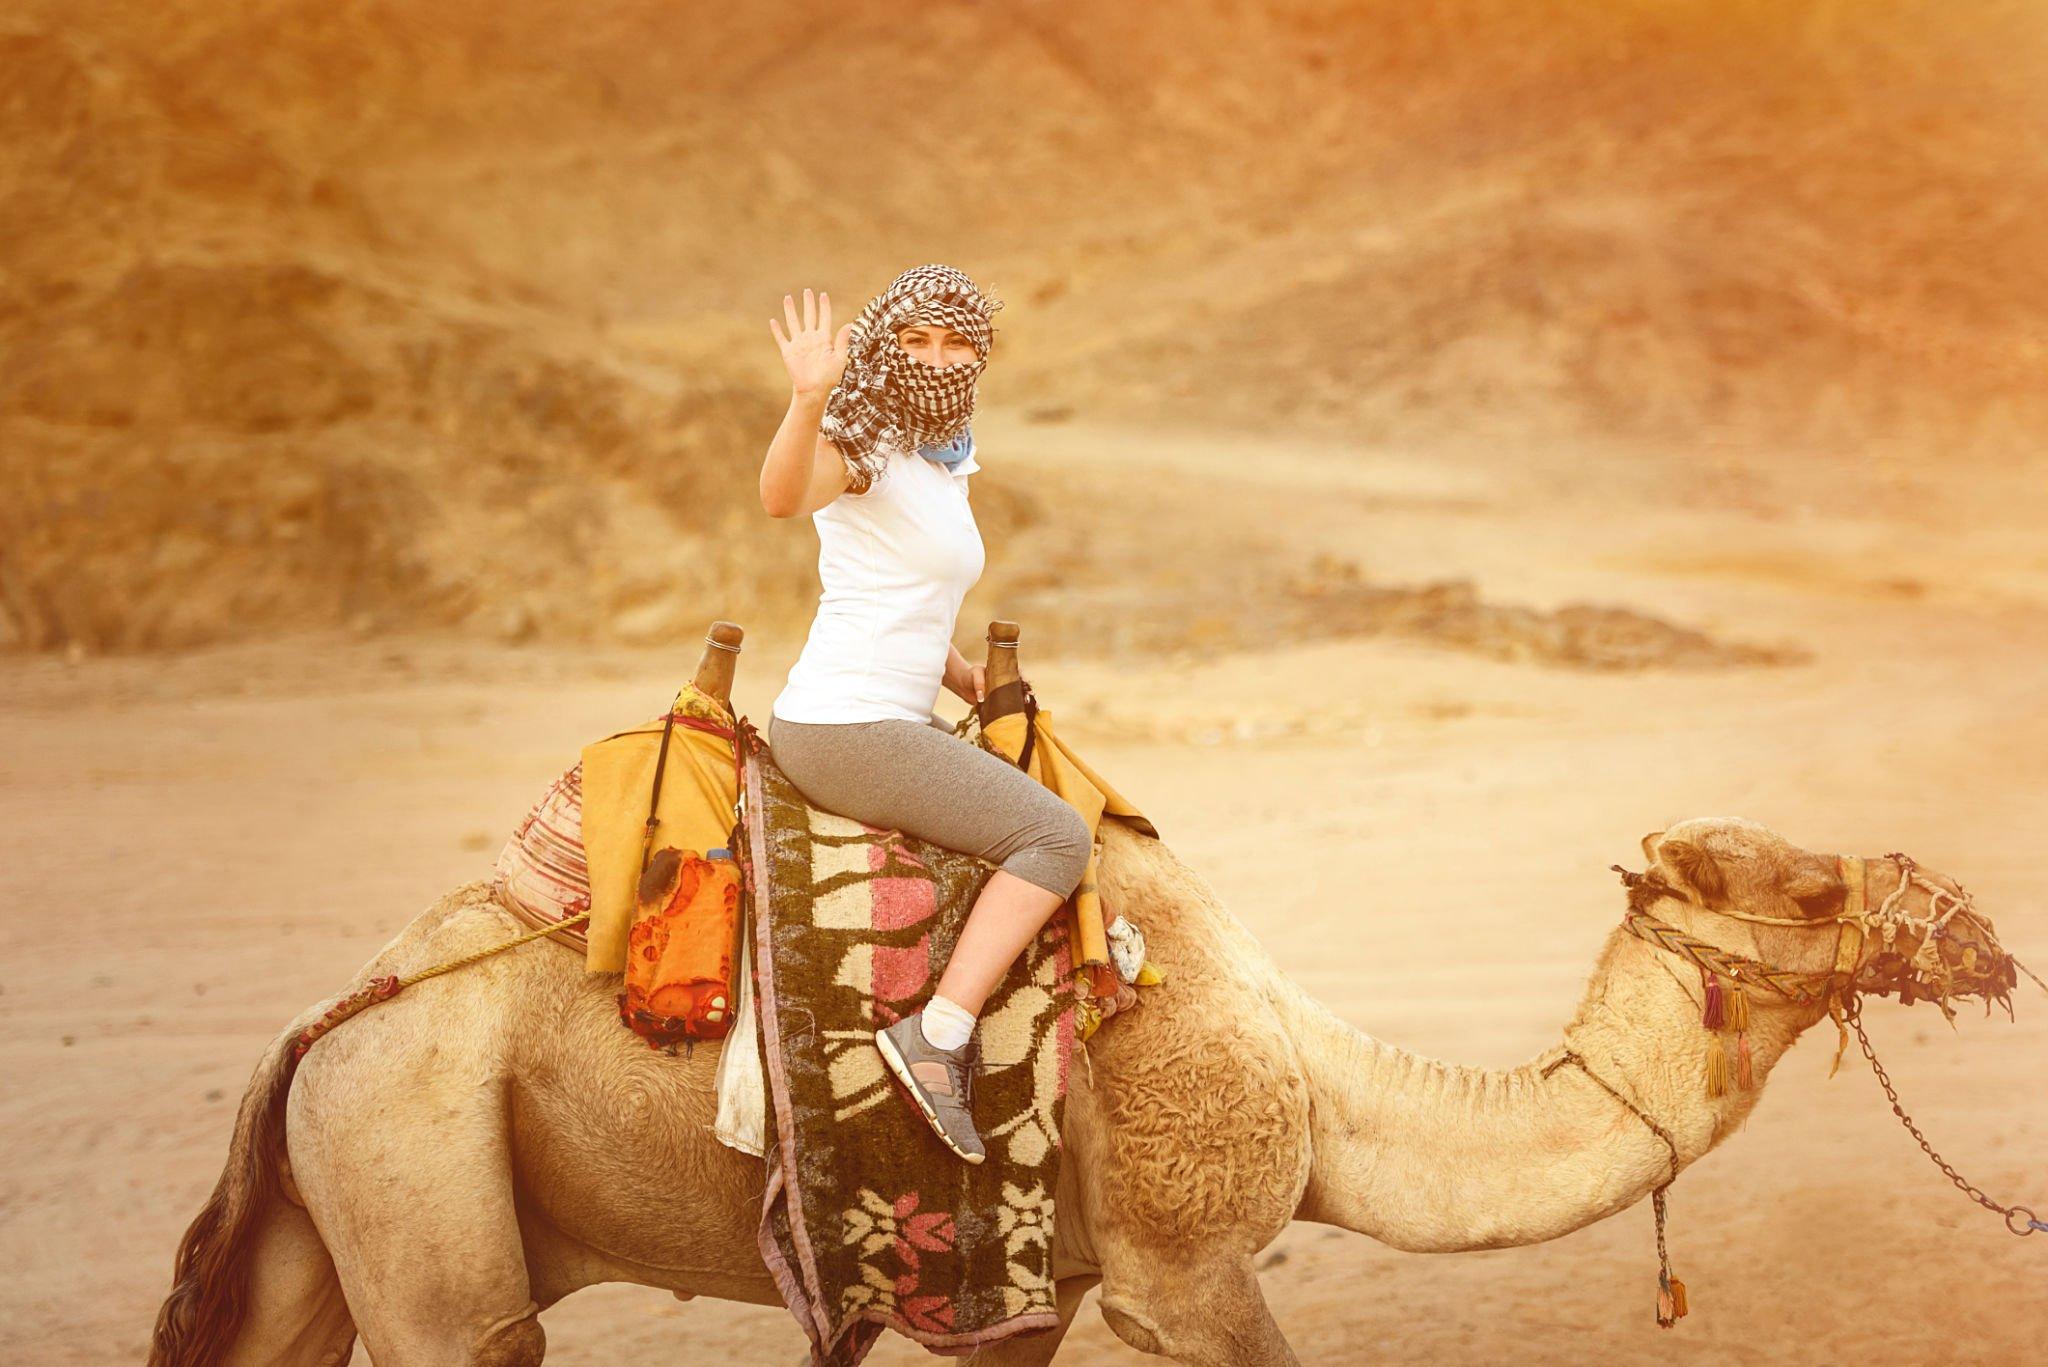 camel-ride-agadir